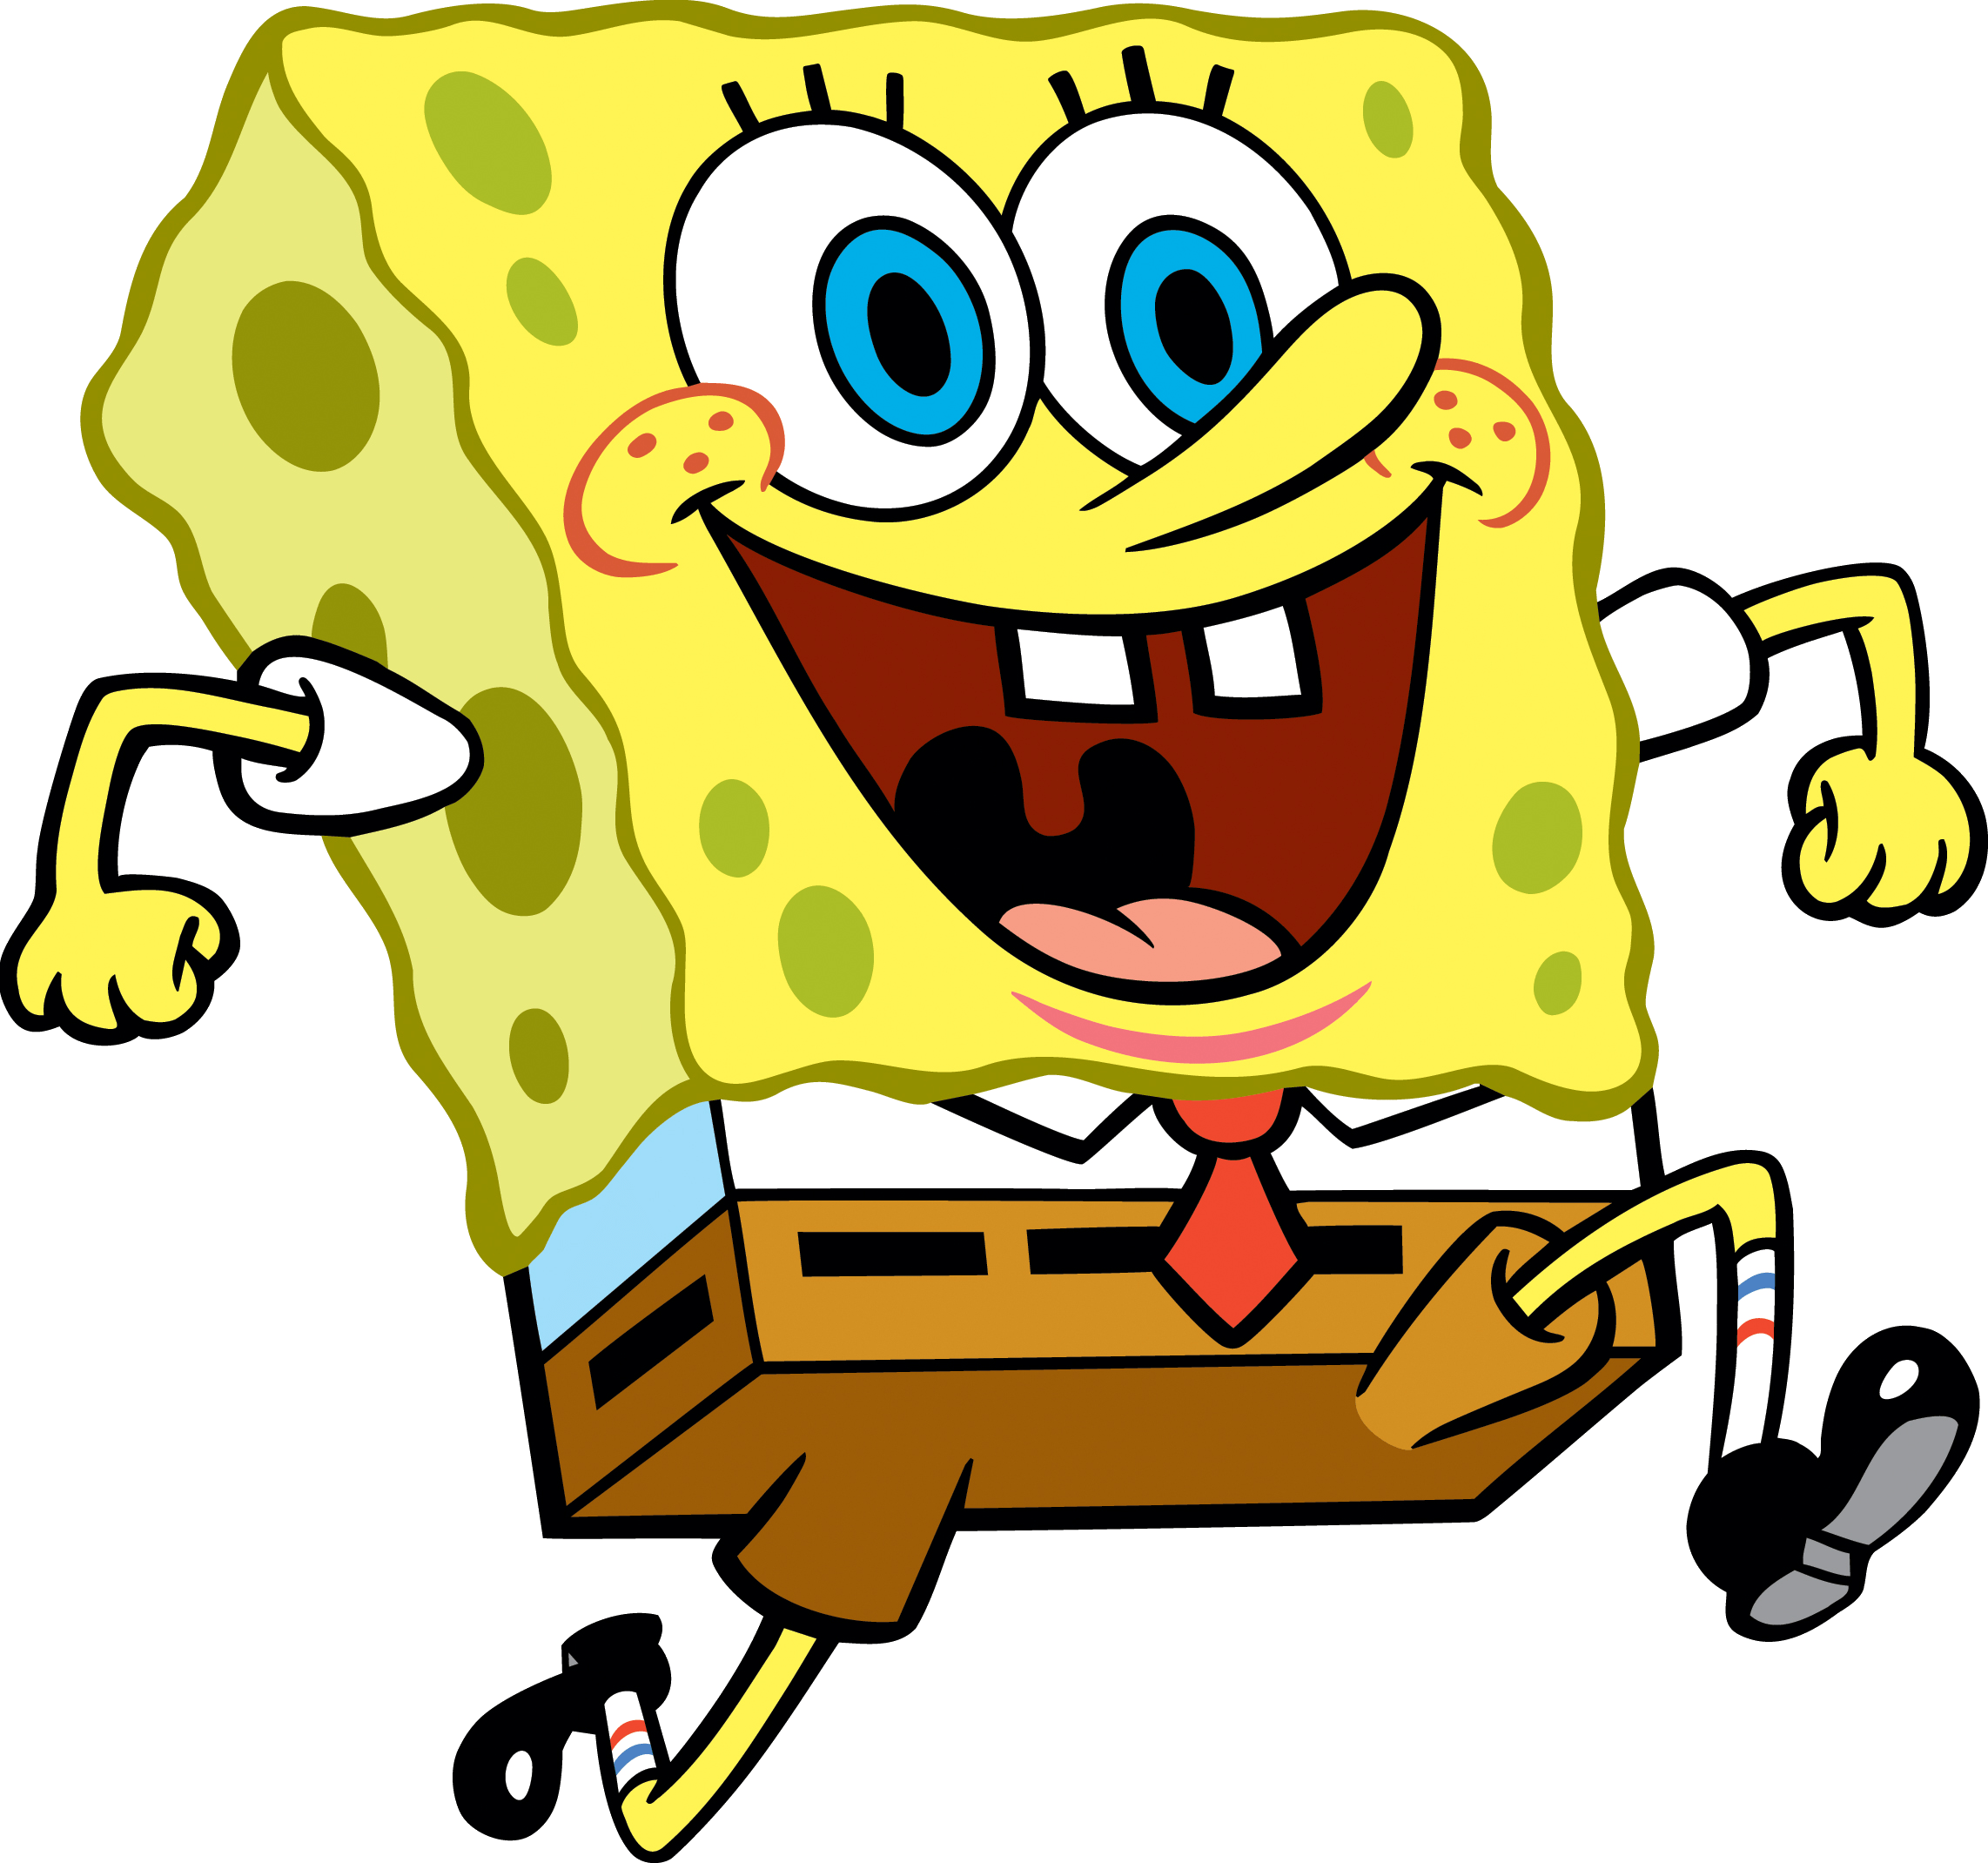 Gambar Spongebob Png - KibrisPDR